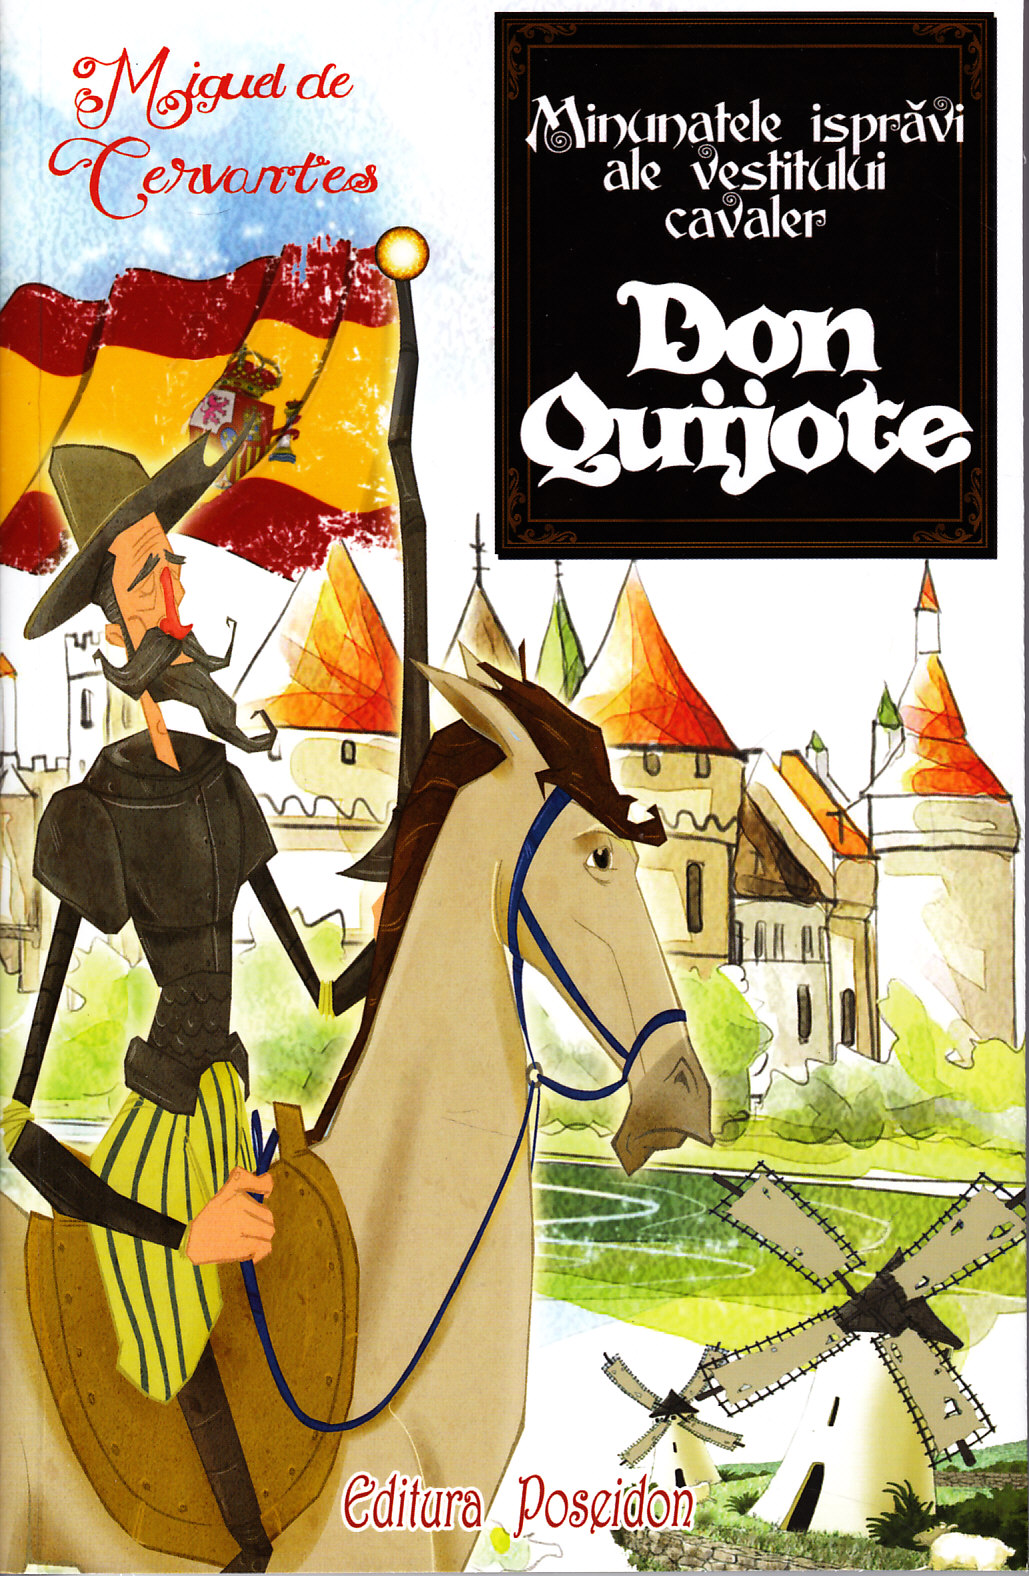 Minunatele ispravi ale vestitului Cavaler Don Quijote - Miguel De Cervantes